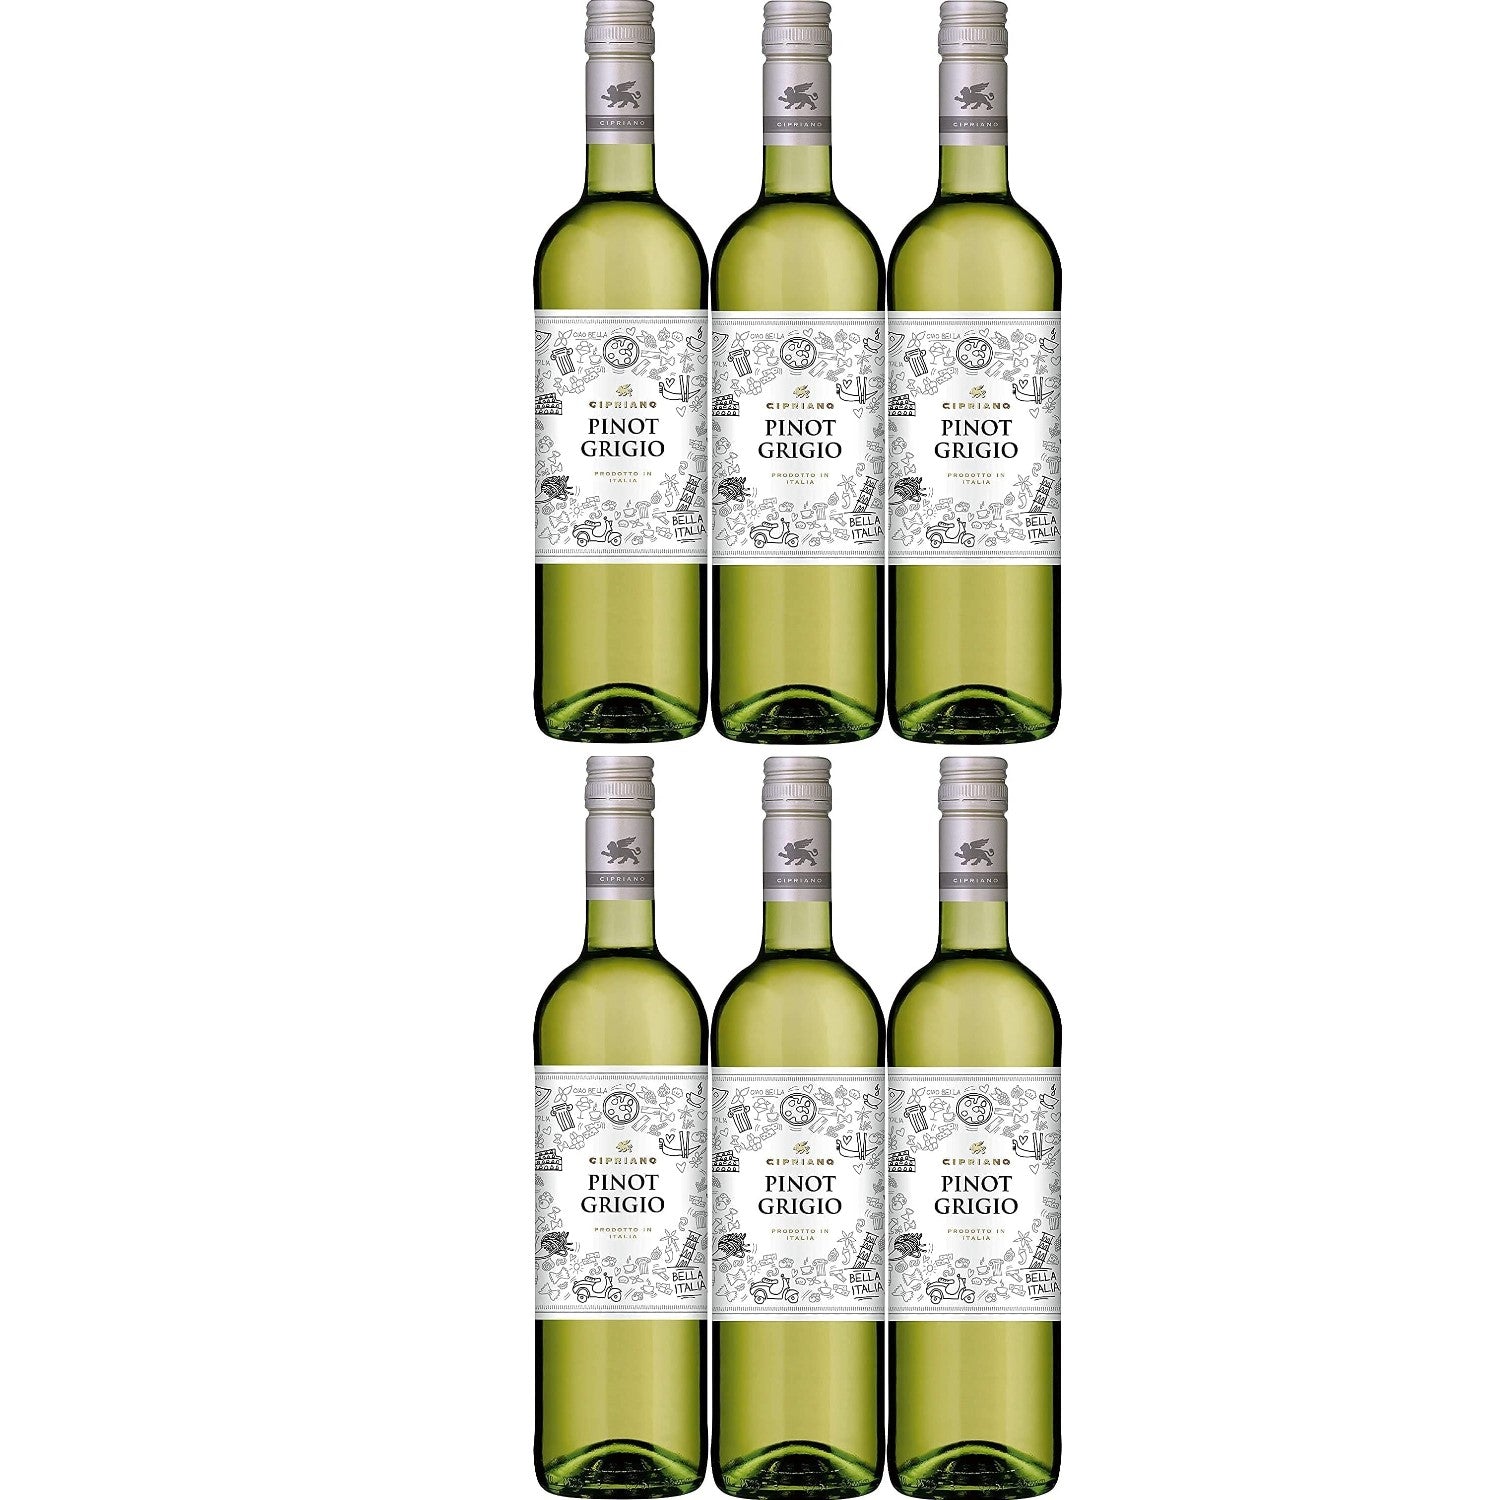 Cipriano Pinot Grigio Venezie Weißwein italienischer Wein trocken DOC Italien (6 x 0.75l) - Versanel -